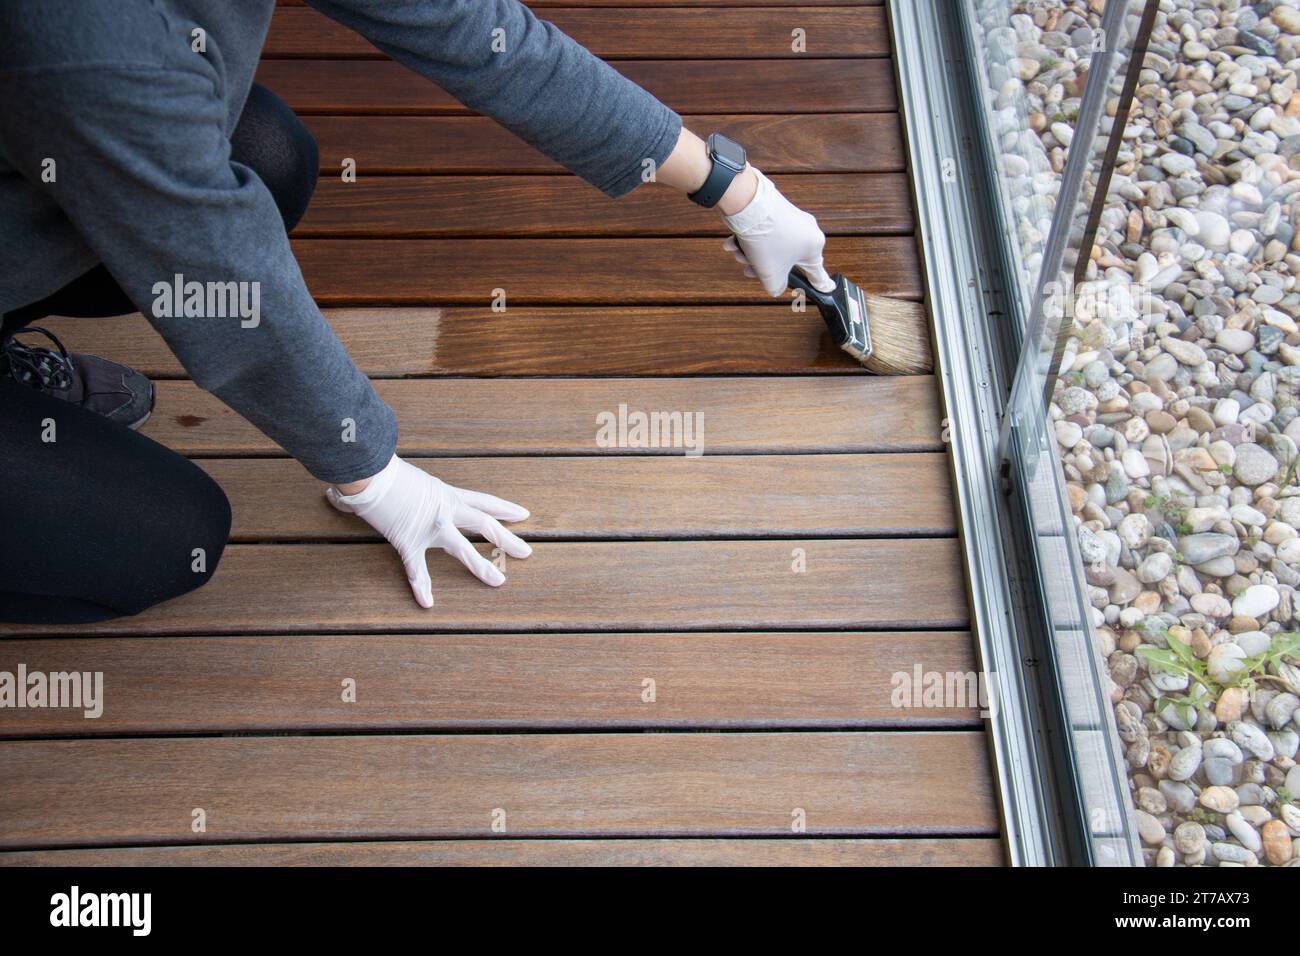 Sigillatura e verniciatura di pavimenti in legno, tenendo a mano una spazzola applicando uno strato protettivo trasparente Foto Stock